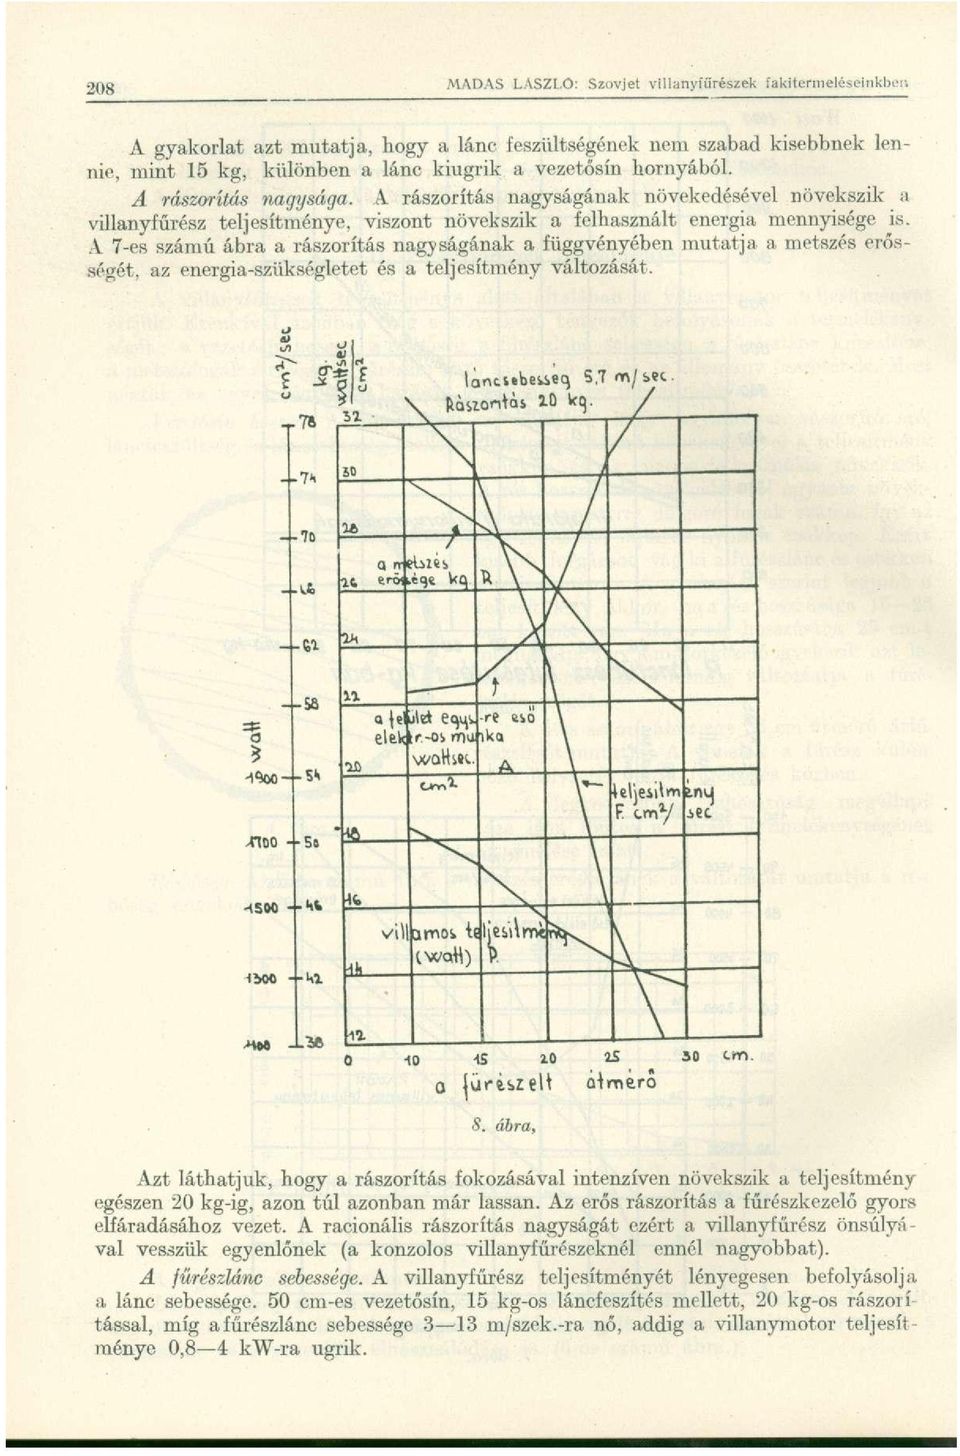 A 7-es számú ábra a rászorítás nagyságának a függvényében mutatja a metszés erősségét, az energia-szükségletet és a teljesítmény változását. 0 ürií>zeh átmér ő S.